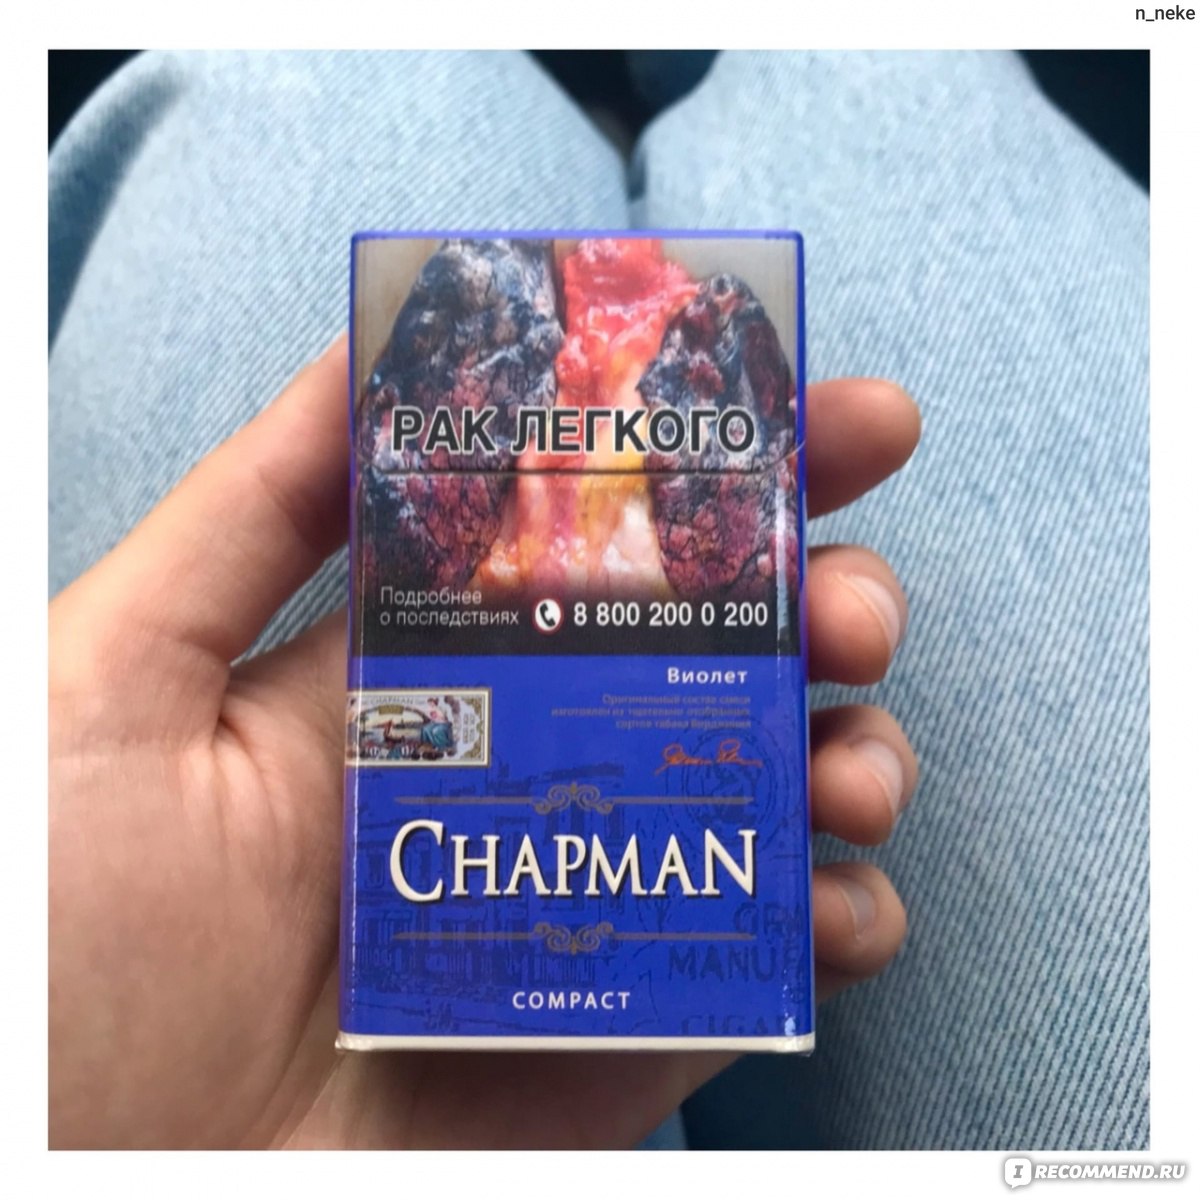 Чапман компакт сигареты. Chapman Виолет компакт сигареты. Сигареты “Chapman Браун” компакт. Сигареты Чапман Браун тонкие. Сигареты Chapman (Чапман) компакт Violet.